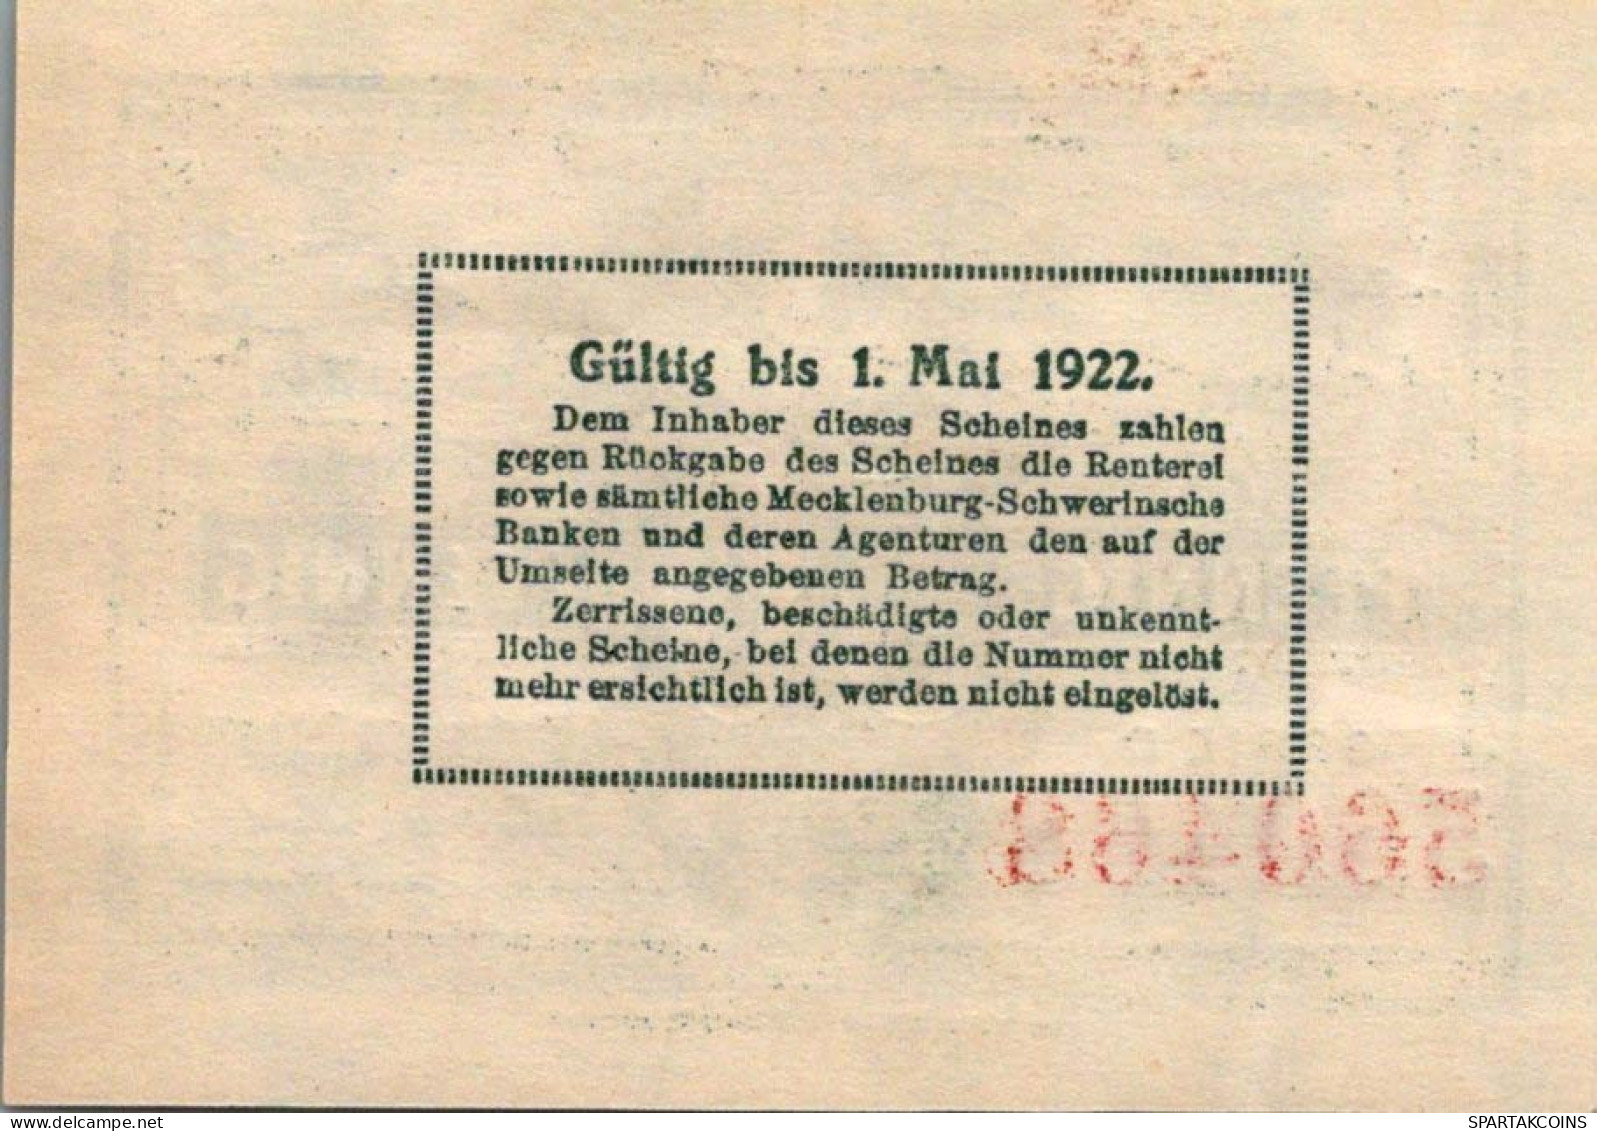 50 PFENNIG 1922 MECKLENBURG-SCHWERIN Mecklenburg-Schwerin UNC DEUTSCHLAND #PI739 - Lokale Ausgaben